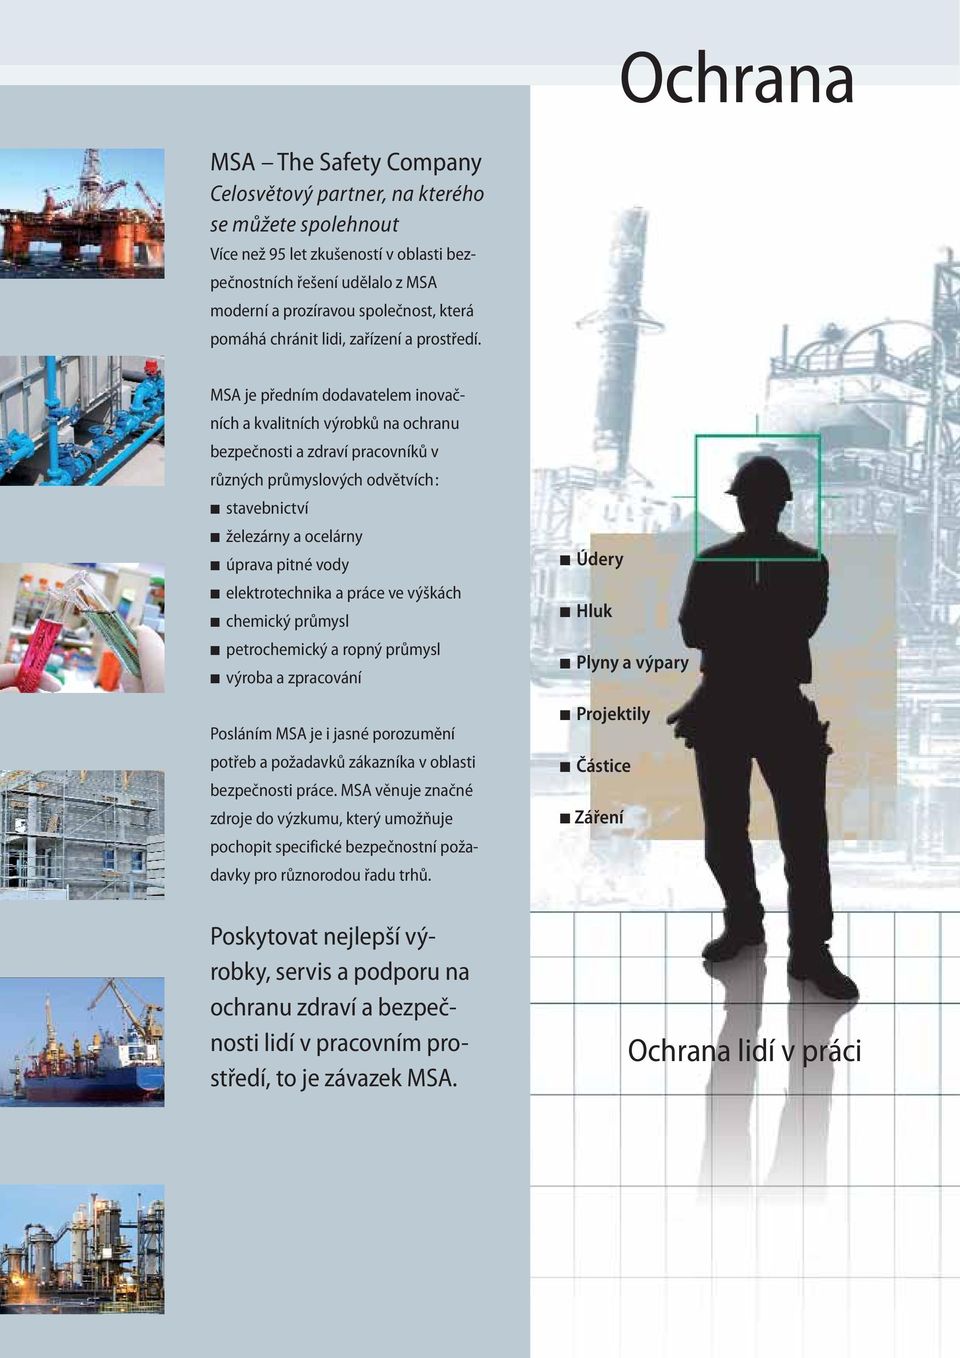 MSA je předním dodavatelem inovačních a kvalitních výrobků na ochranu bezpečnosti a zdraví pracovníků v různých průmyslových odvětvích: stavebnictví železárny a ocelárny úprava pitné vody